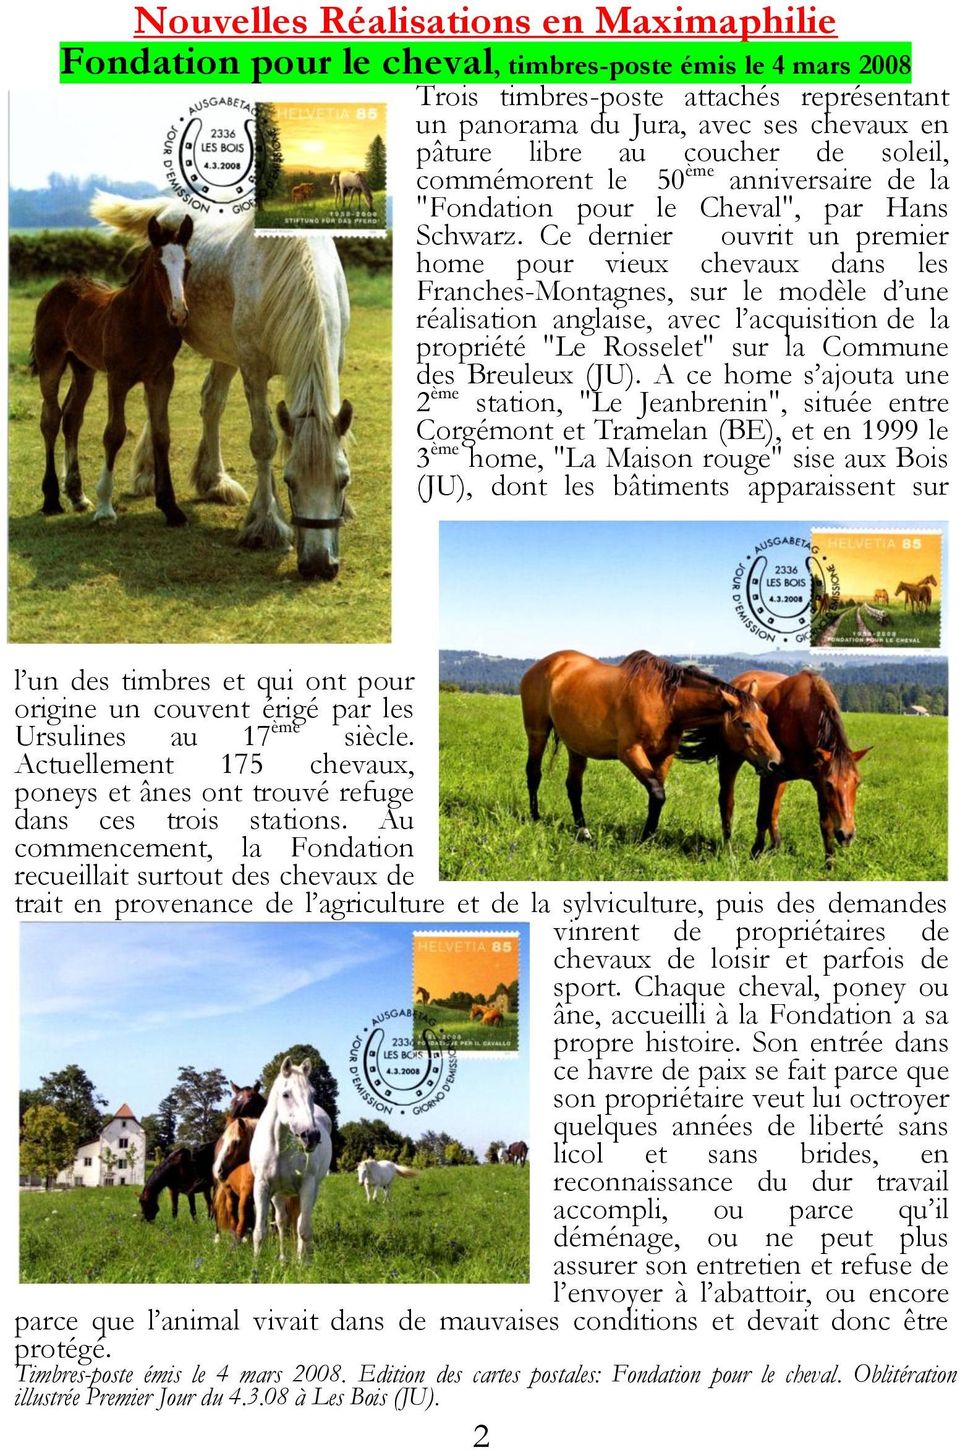 Ce dernier ouvrit un premier home pour vieux chevaux dans les Franches-Montagnes, sur le modèle d une réalisation anglaise, avec l acquisition de la propriété "Le Rosselet" sur la Commune des